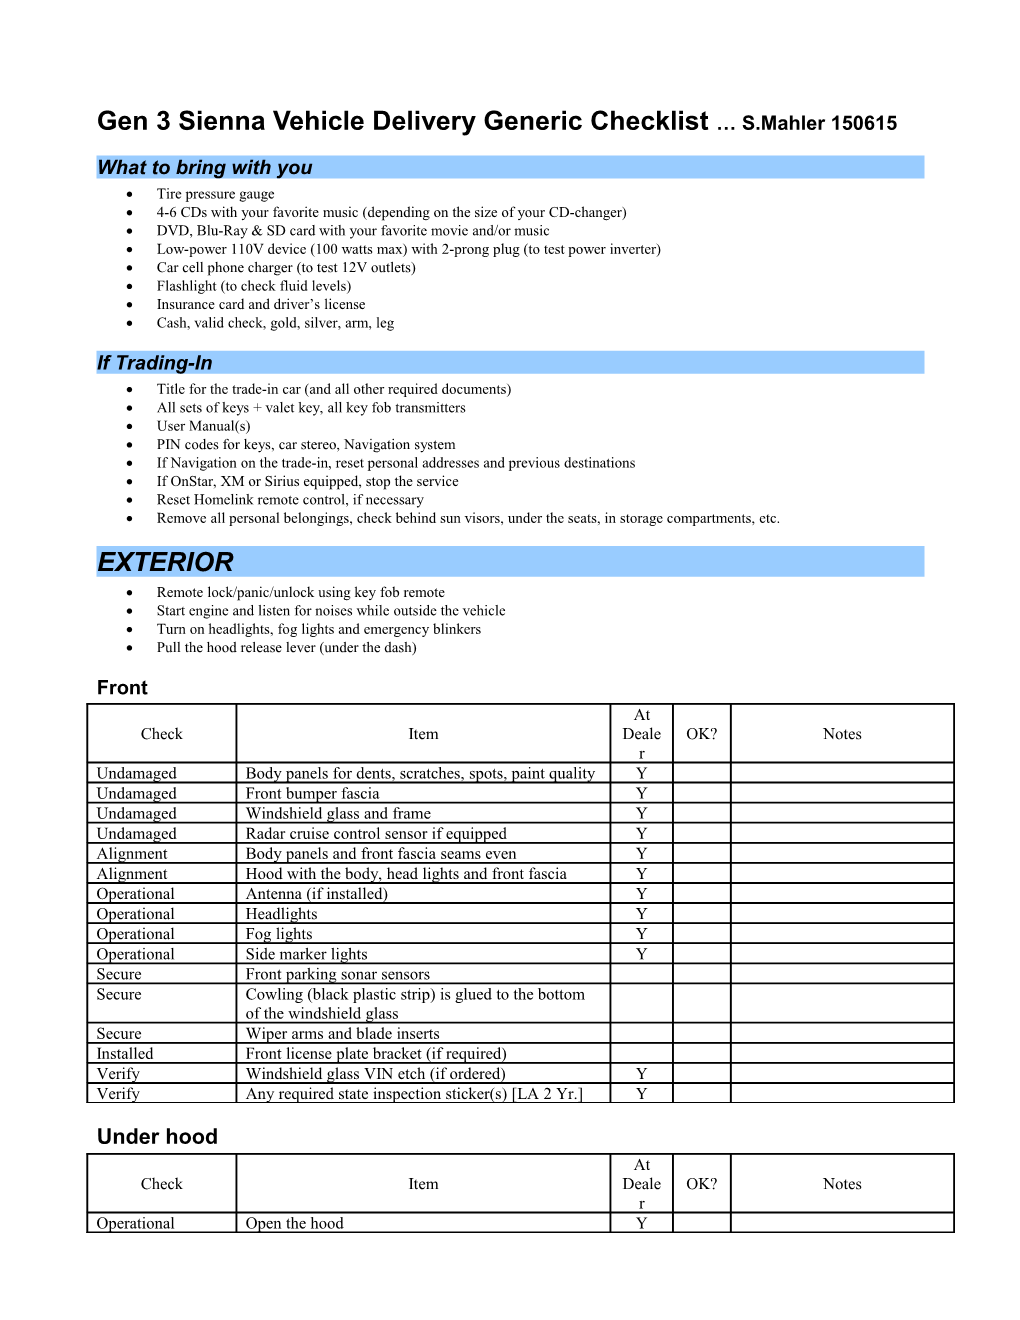 2006 Sienna Vehicle Delivery Checklist